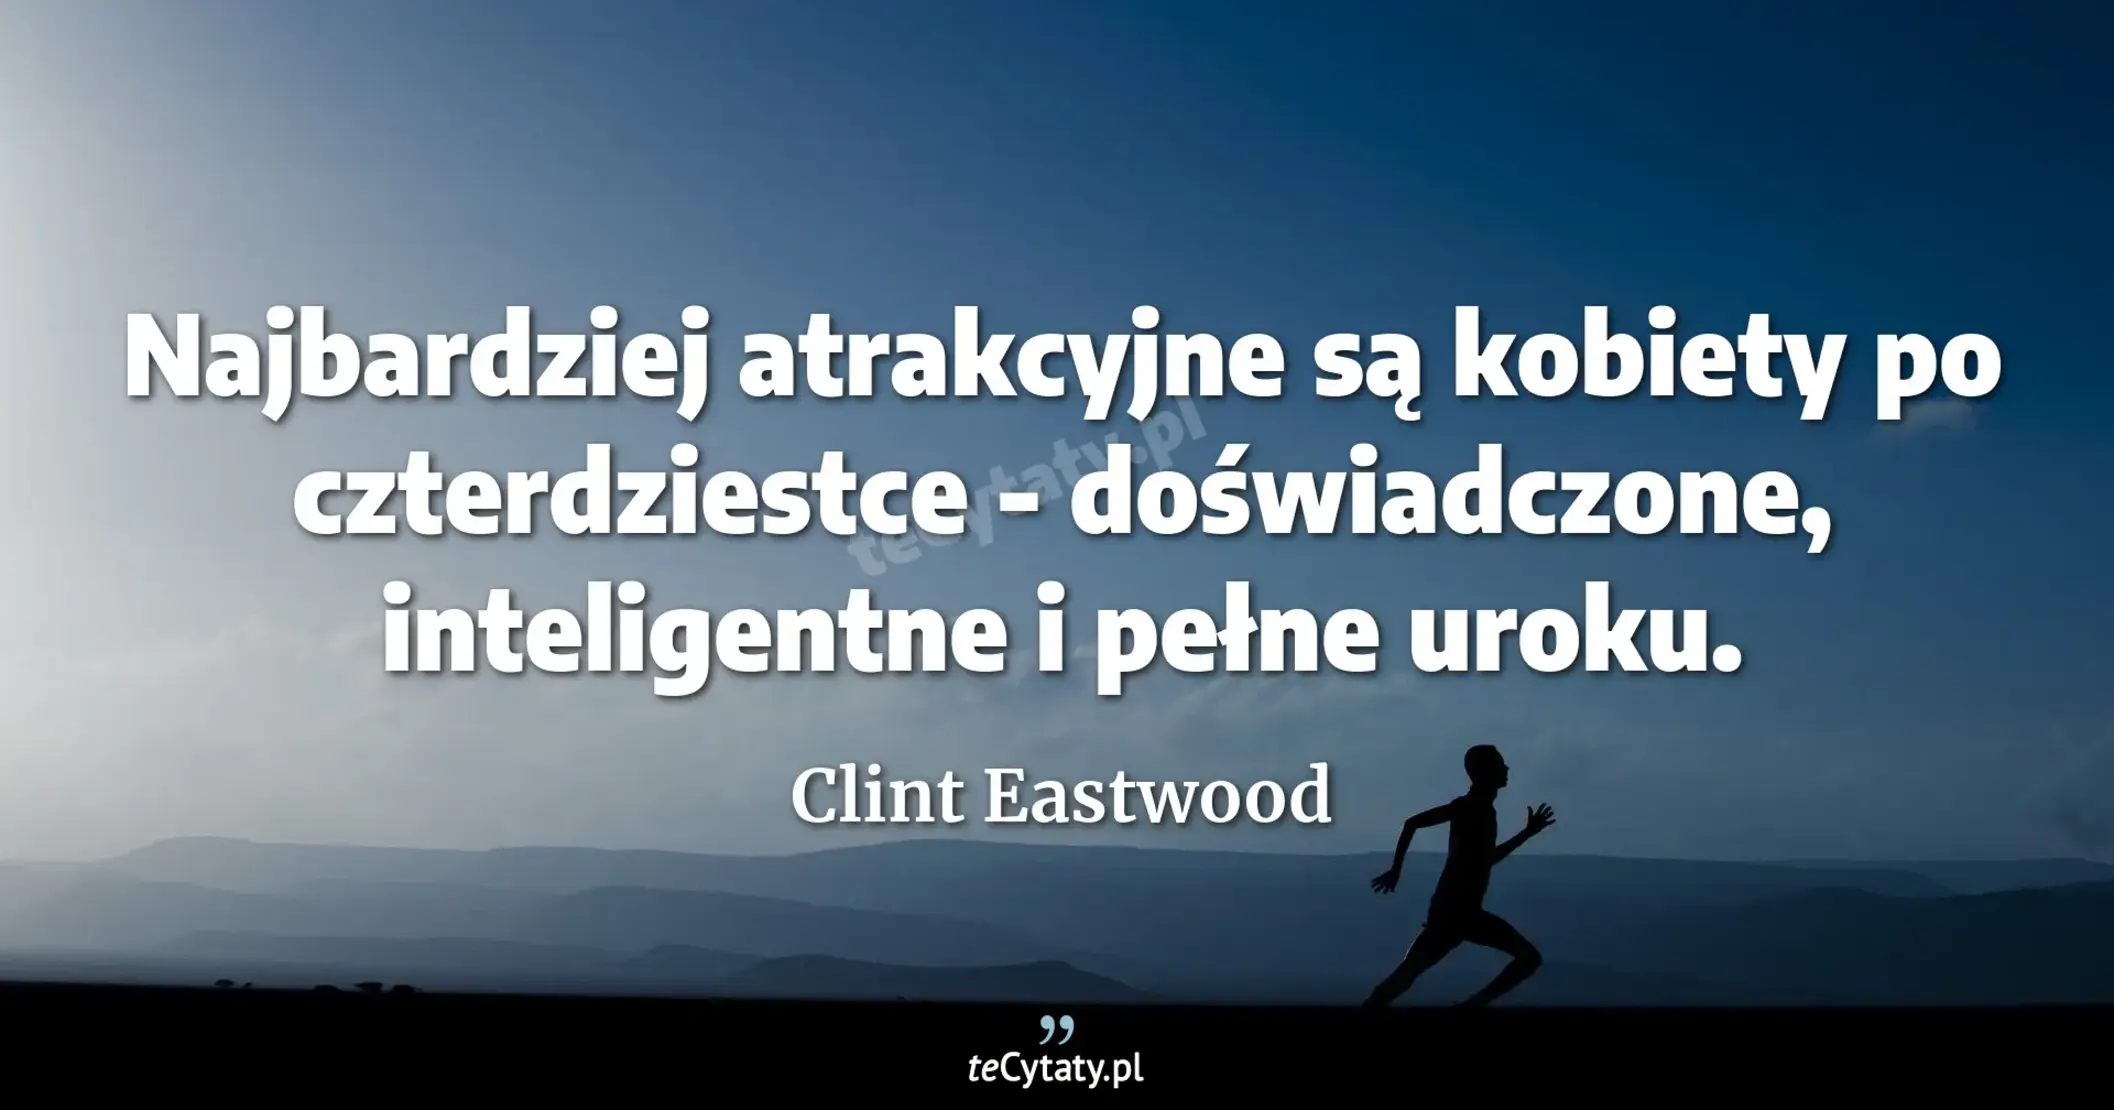 Najbardziej atrakcyjne są kobiety po czterdziestce - doświadczone, inteligentne i pełne uroku. - Clint Eastwood